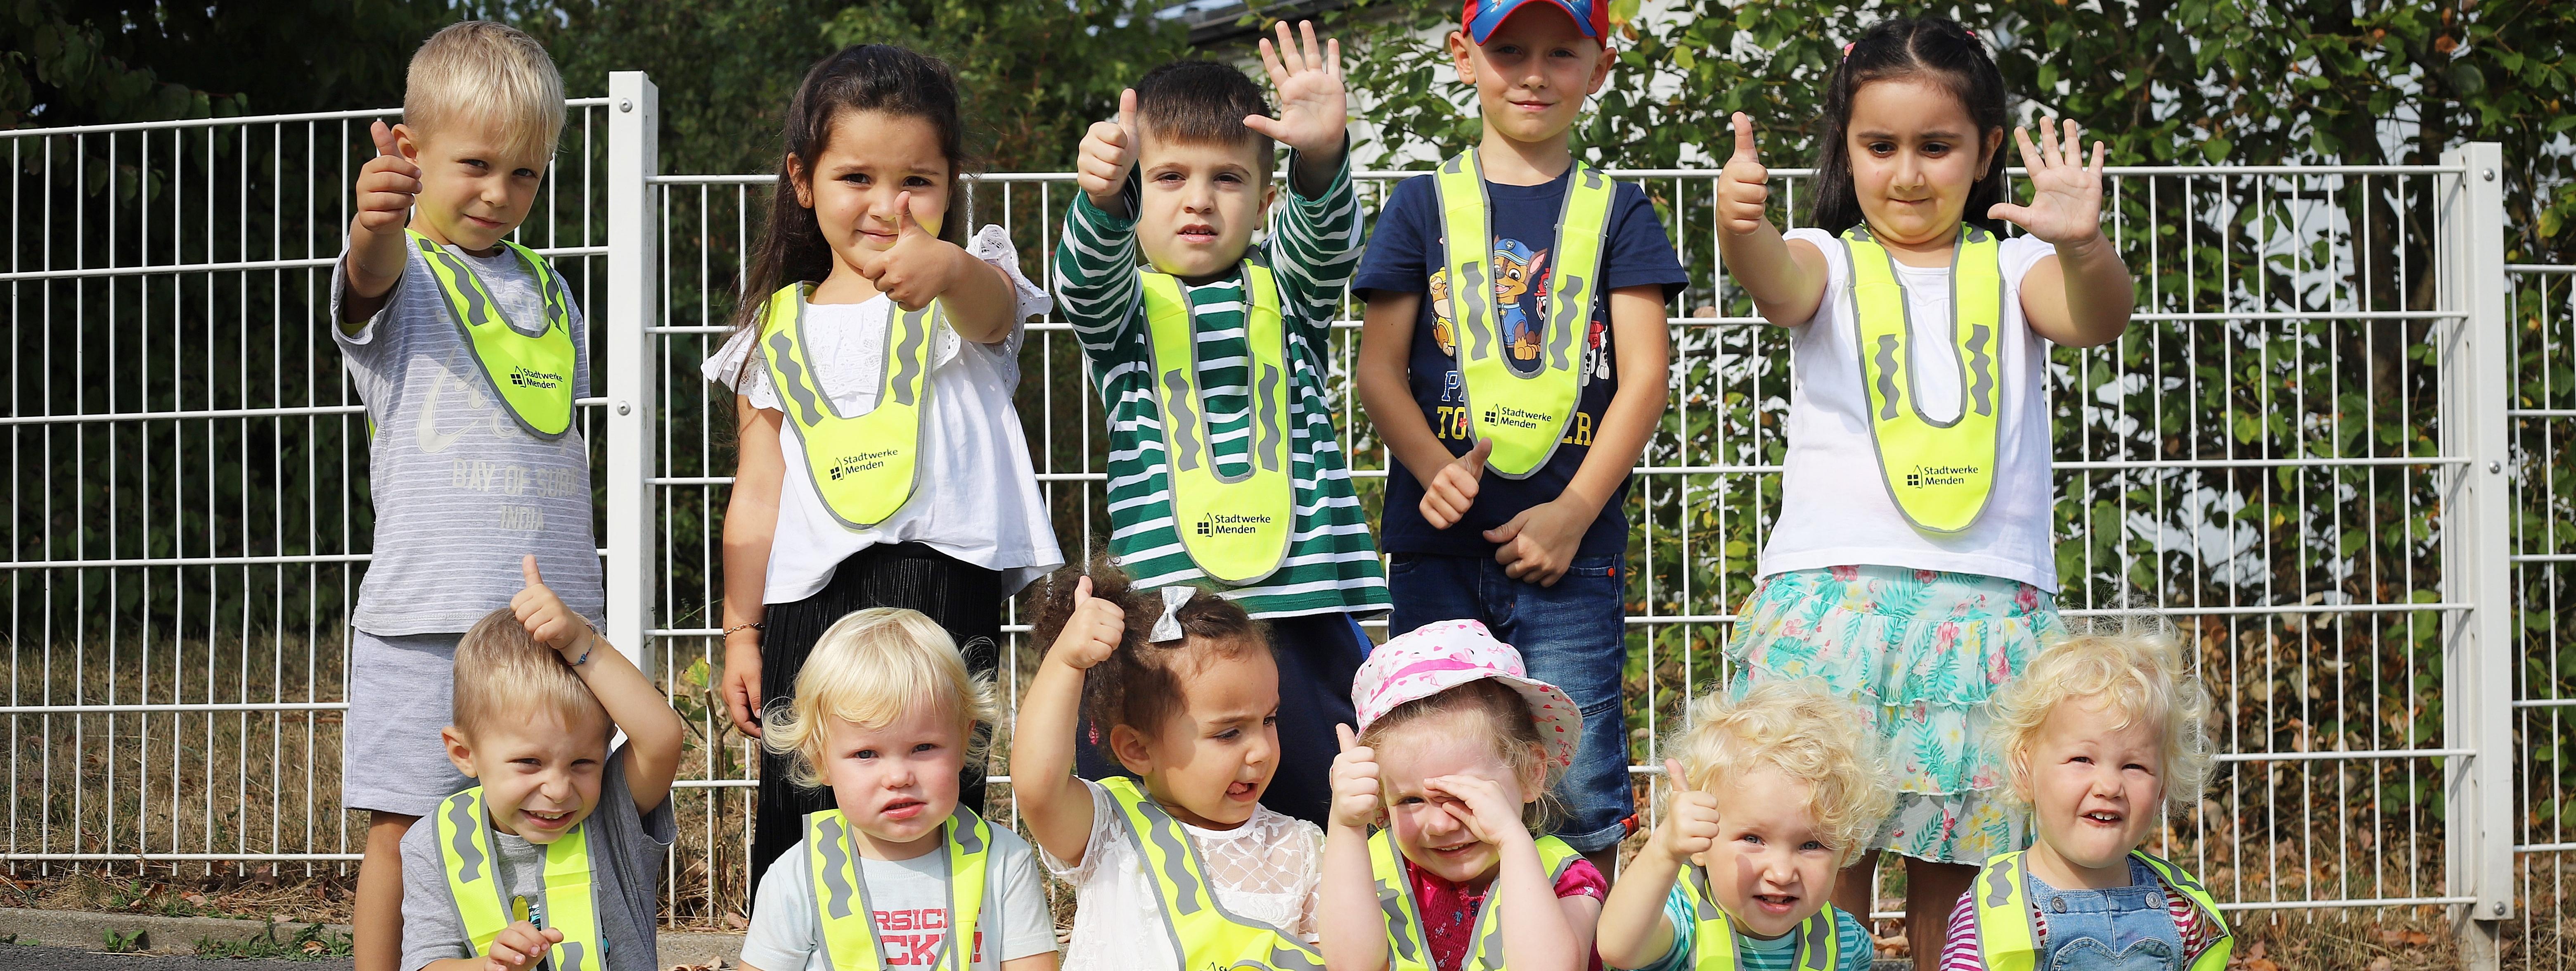 Die Kita-Kinder tragen ihre neuen Sicherheitskragen in leuchtendem Signal-Gelb. Alle Kinder strecken den Daumen nach oben.